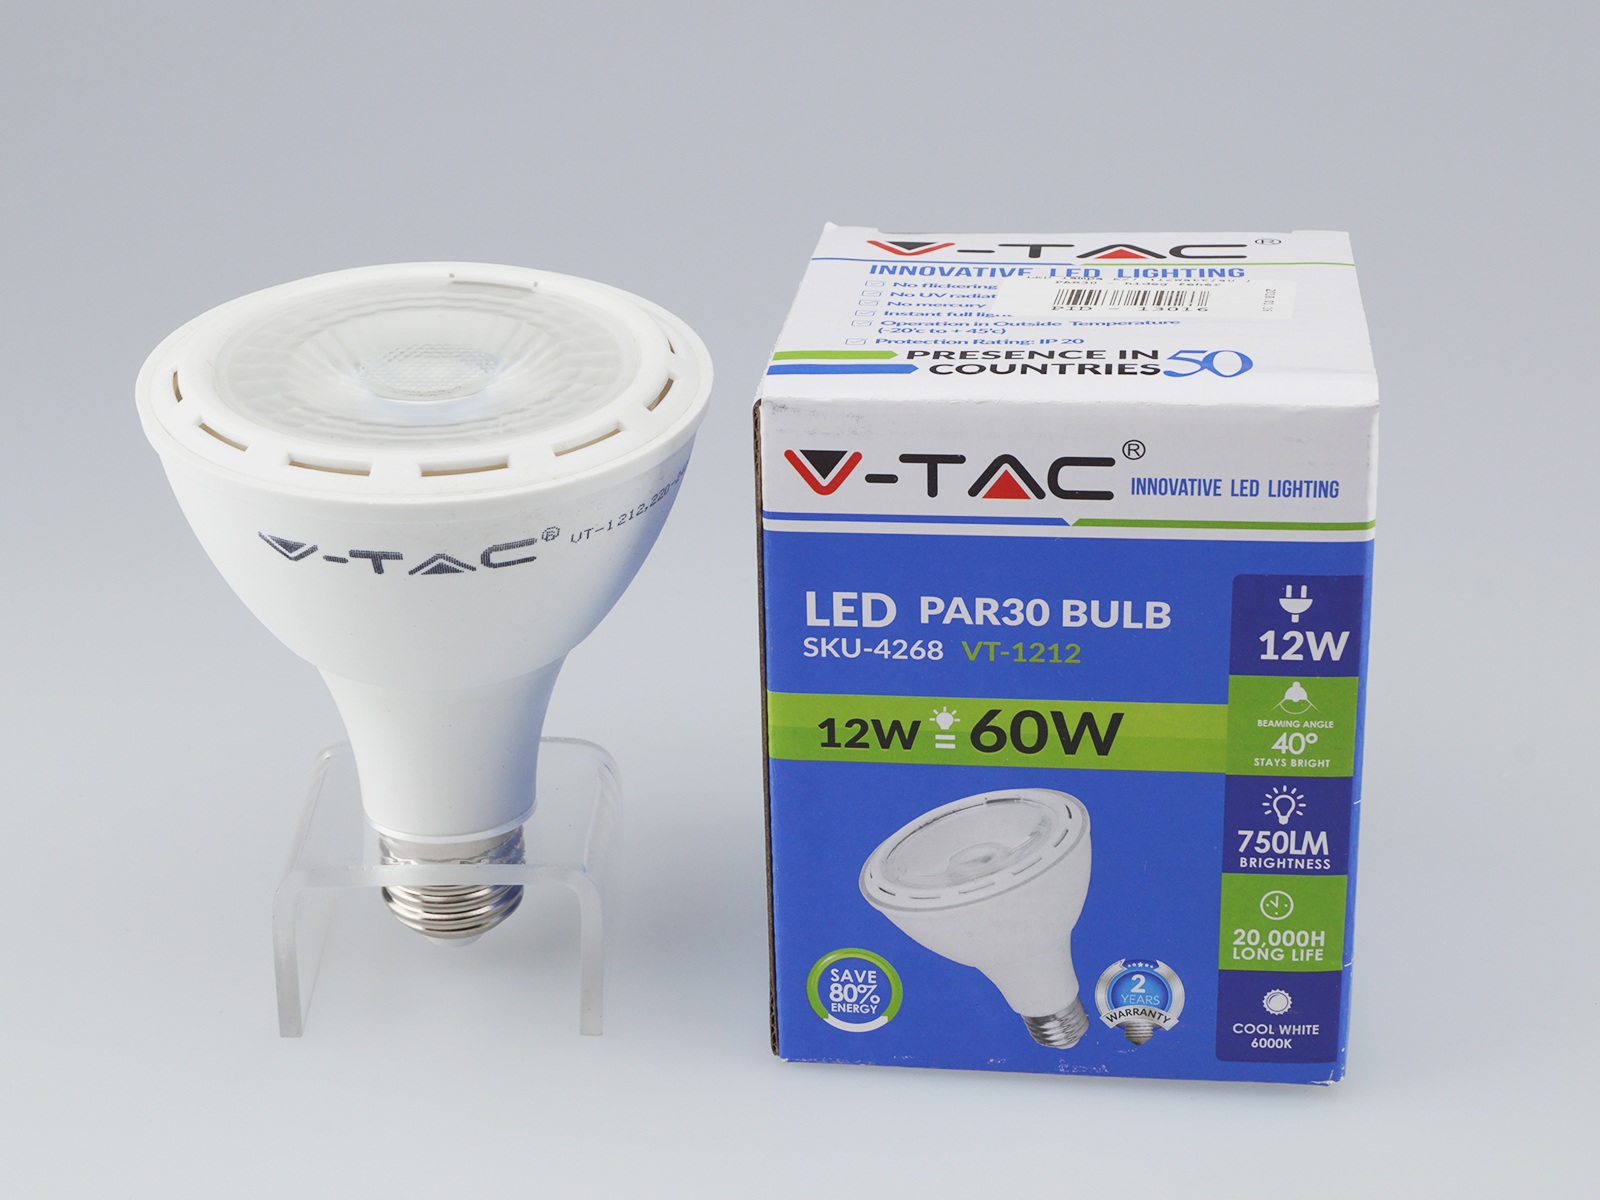 E27 LED lámpa (12W/40°) par30 hideg